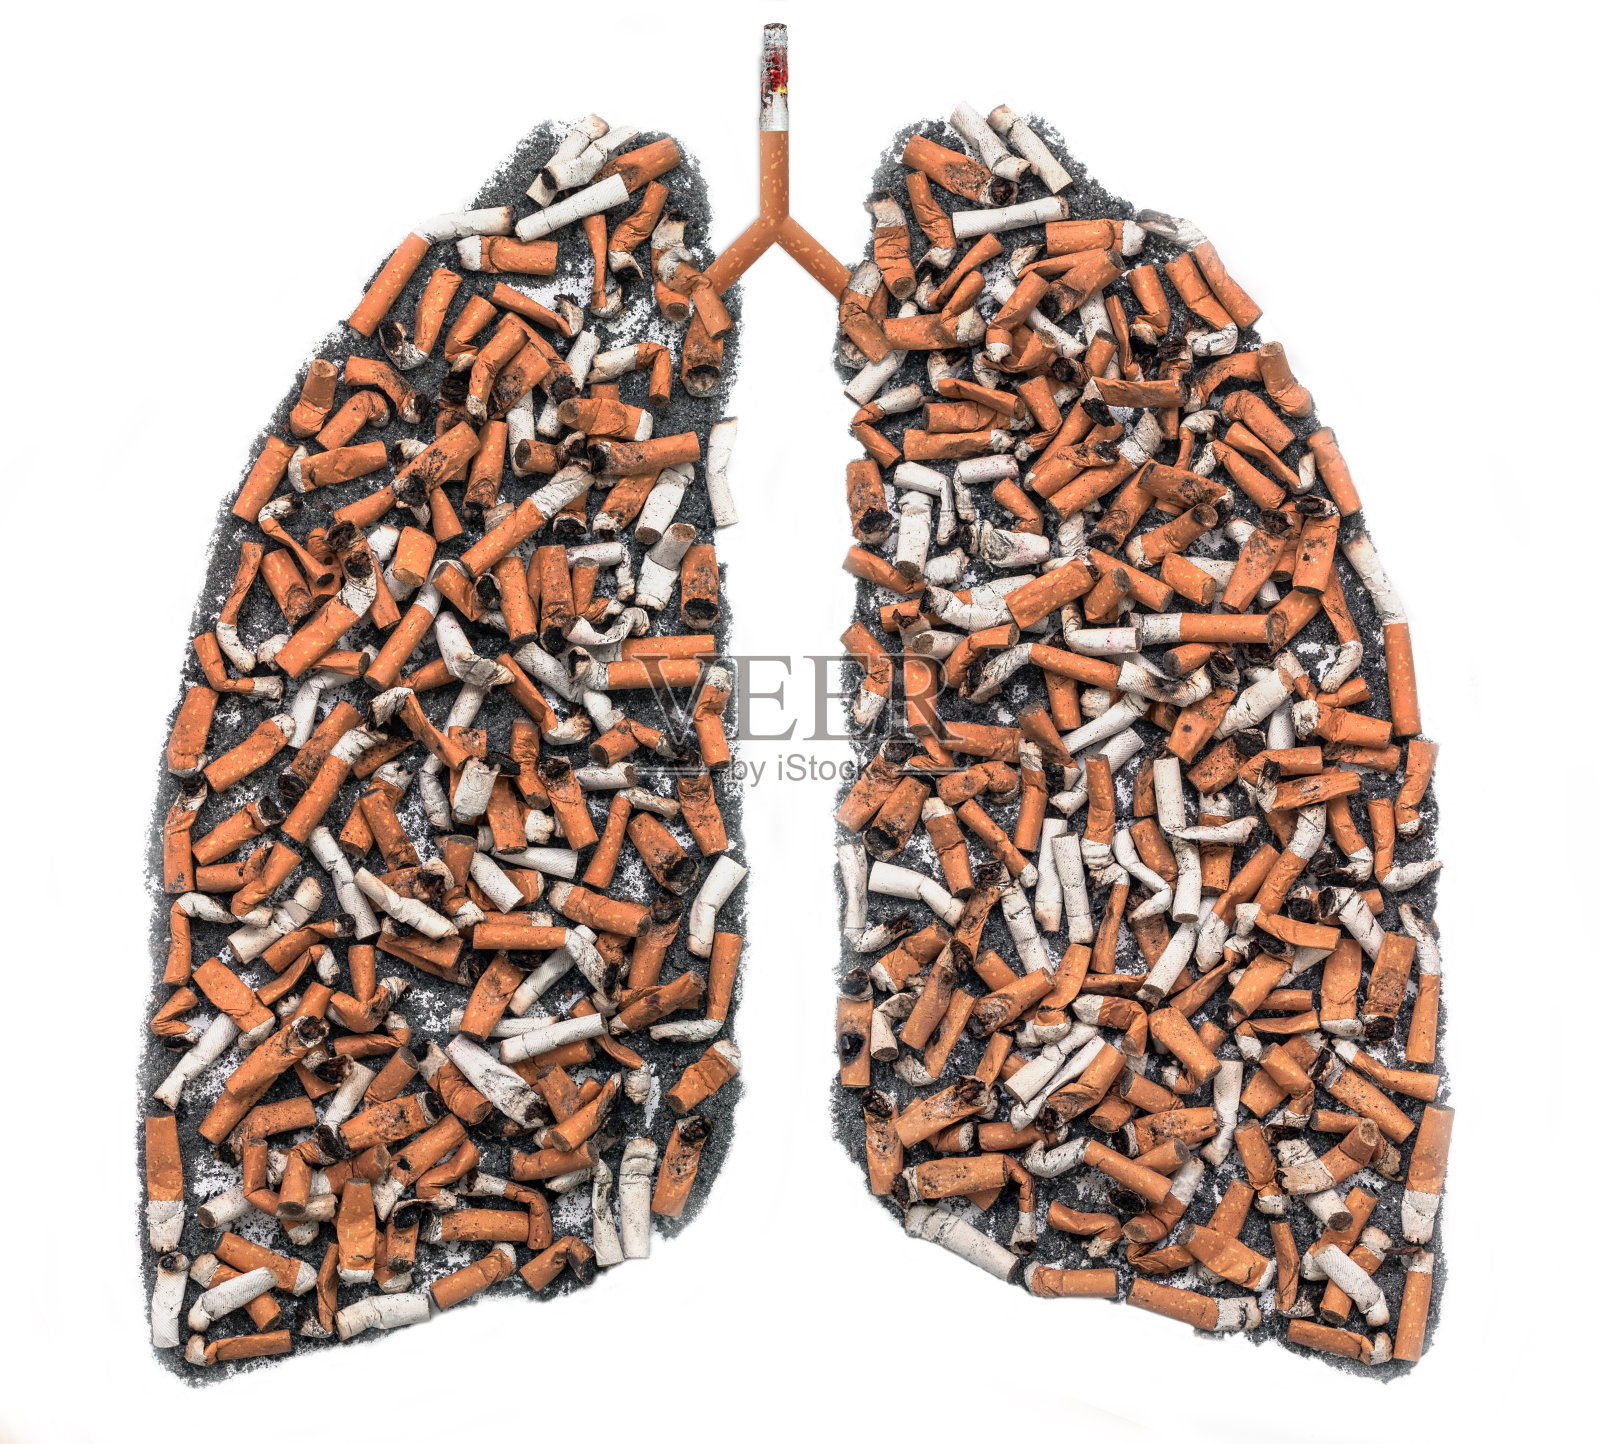 肺部轮廓为烟头照片摄影图片